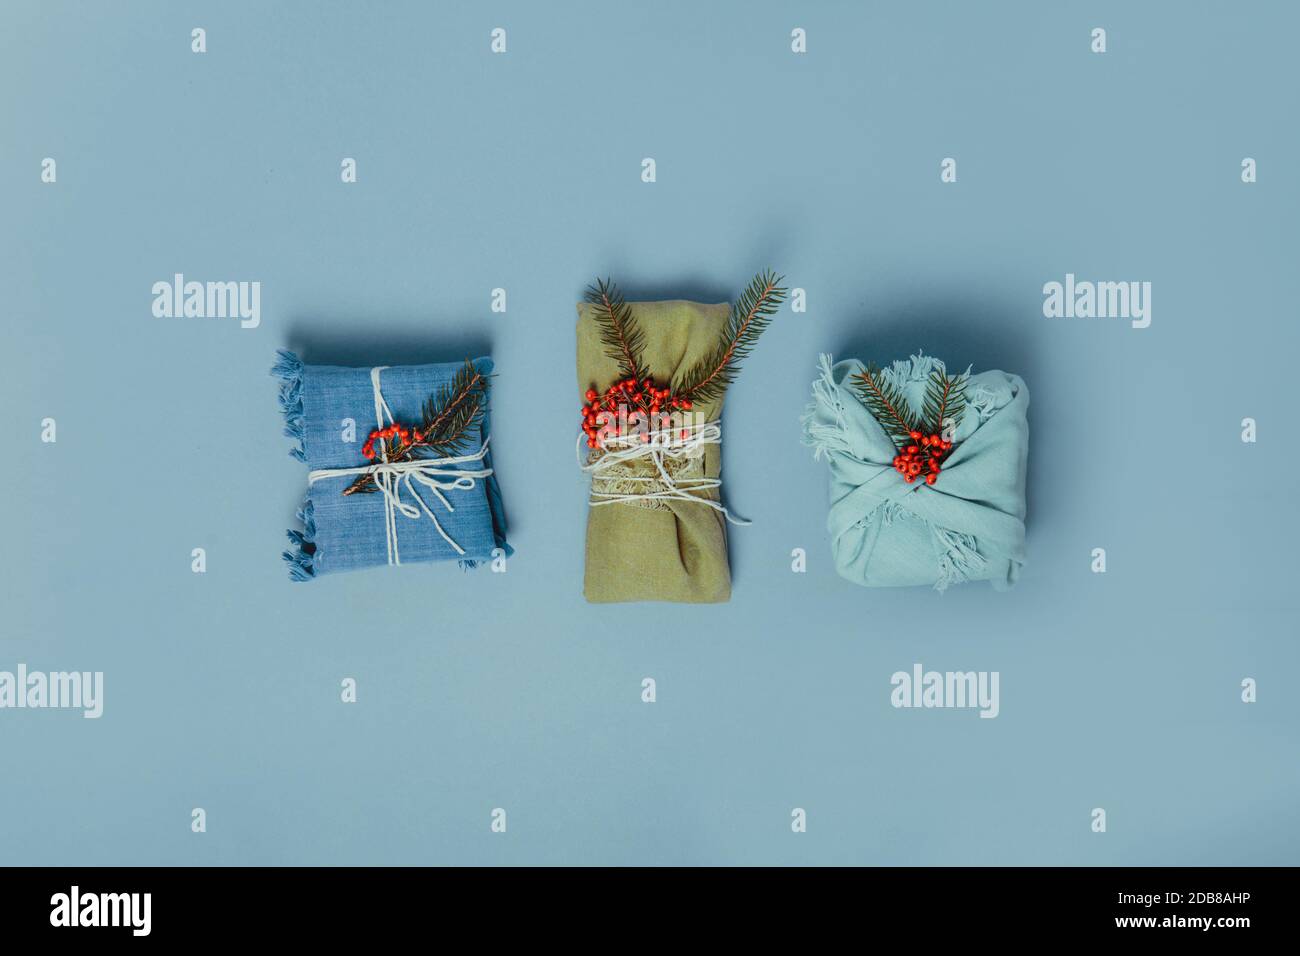 Draufsicht Zero Waste weihnachtskonzept. Drei Geschenke in Stoff eingewickelt mit Fichtenzweig und Beeren auf gedämpftem blauen Hintergrund. Flatlay. Minimalismus Stockfoto